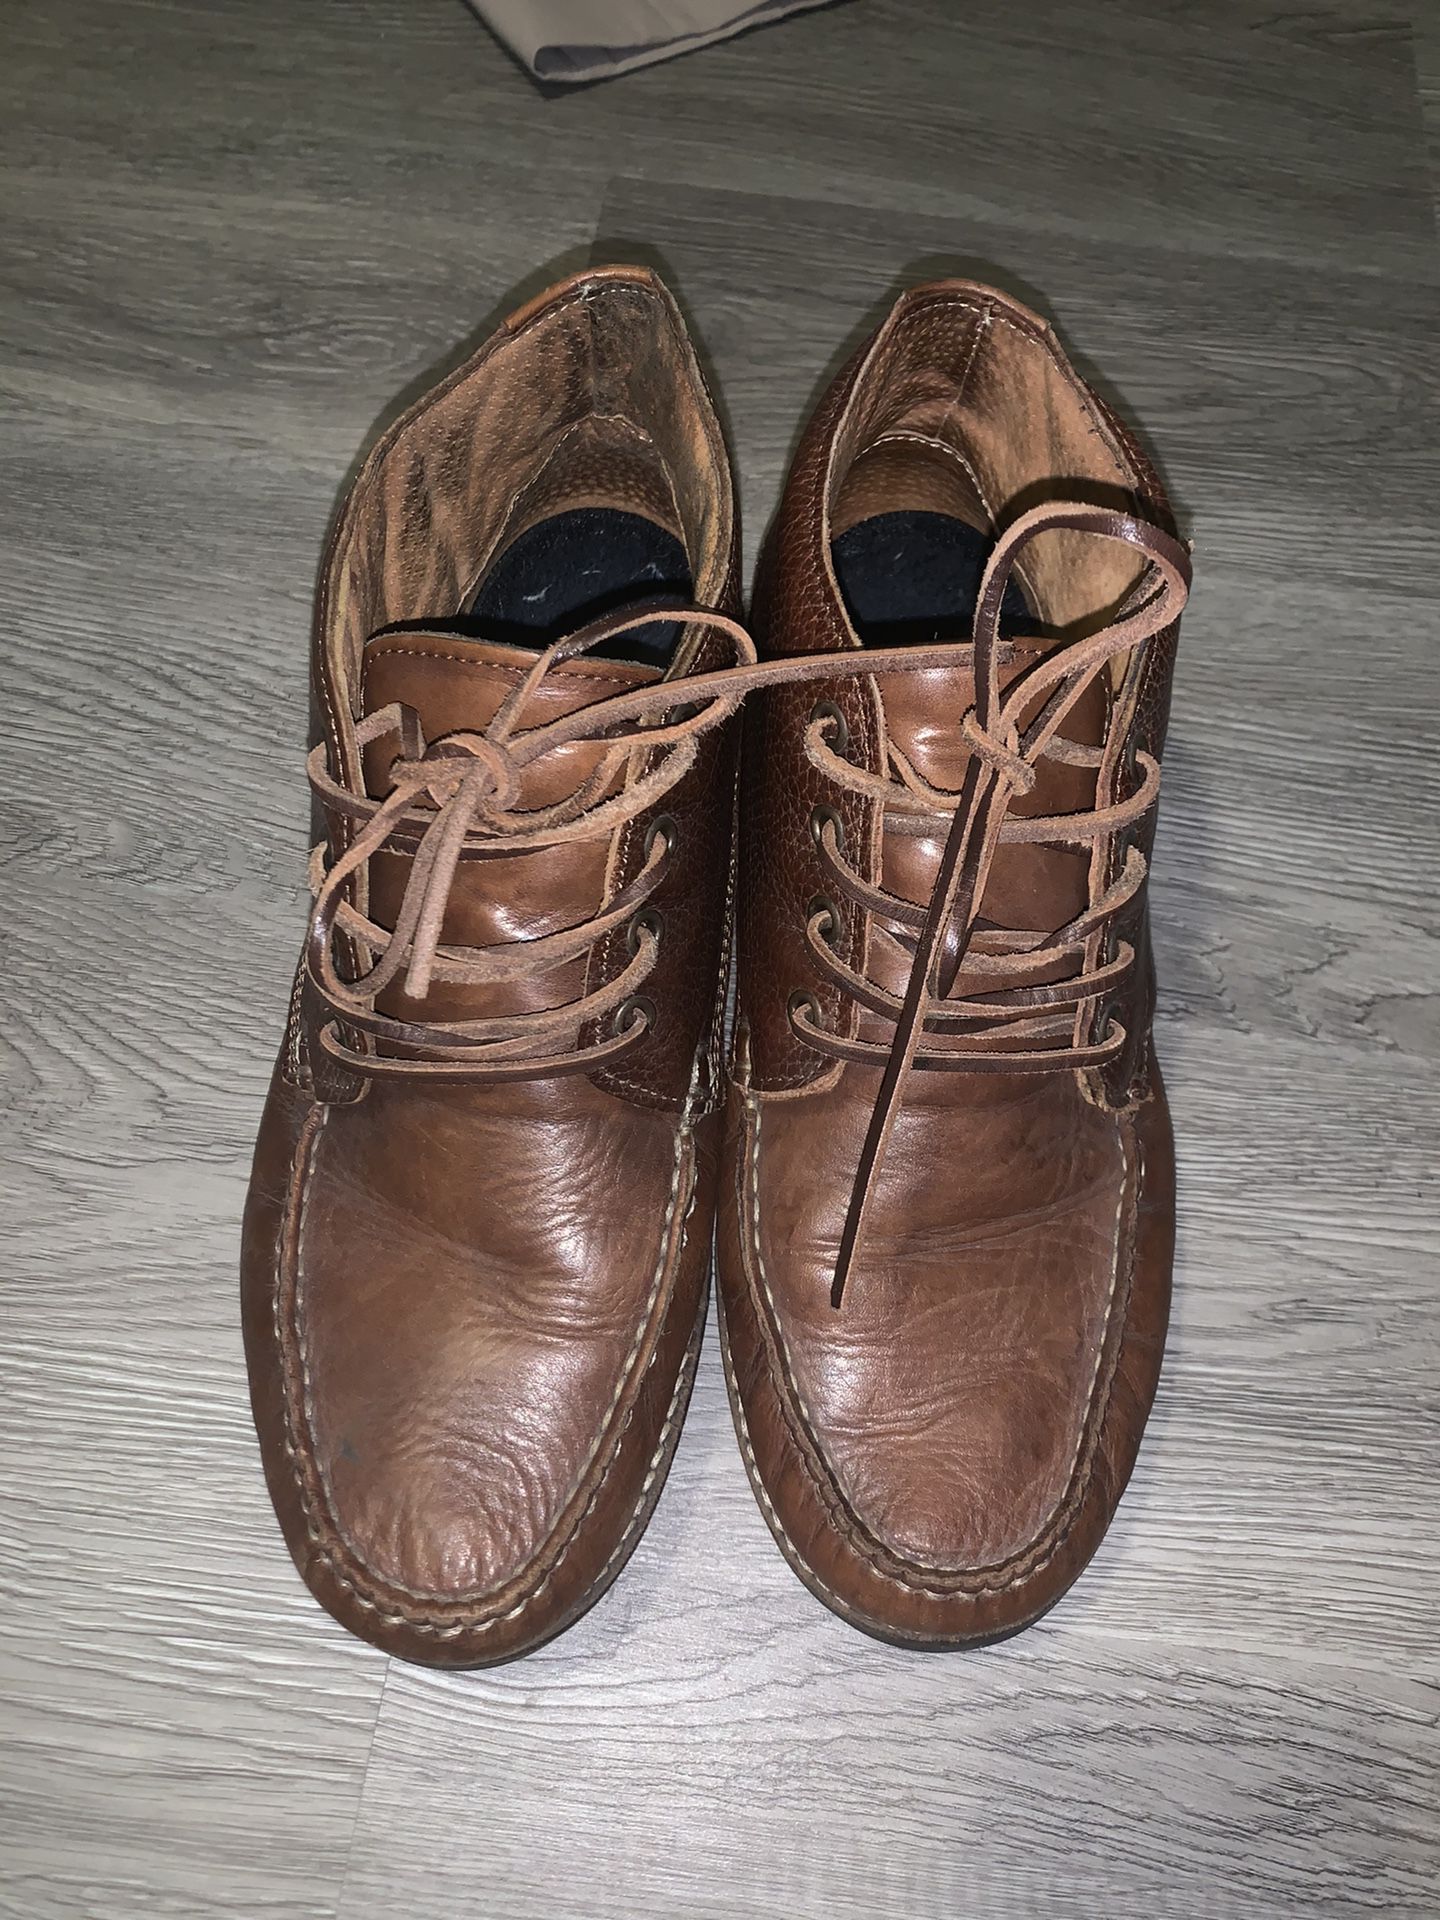 Men’s fashion ankle boots SZ 9 Aldo